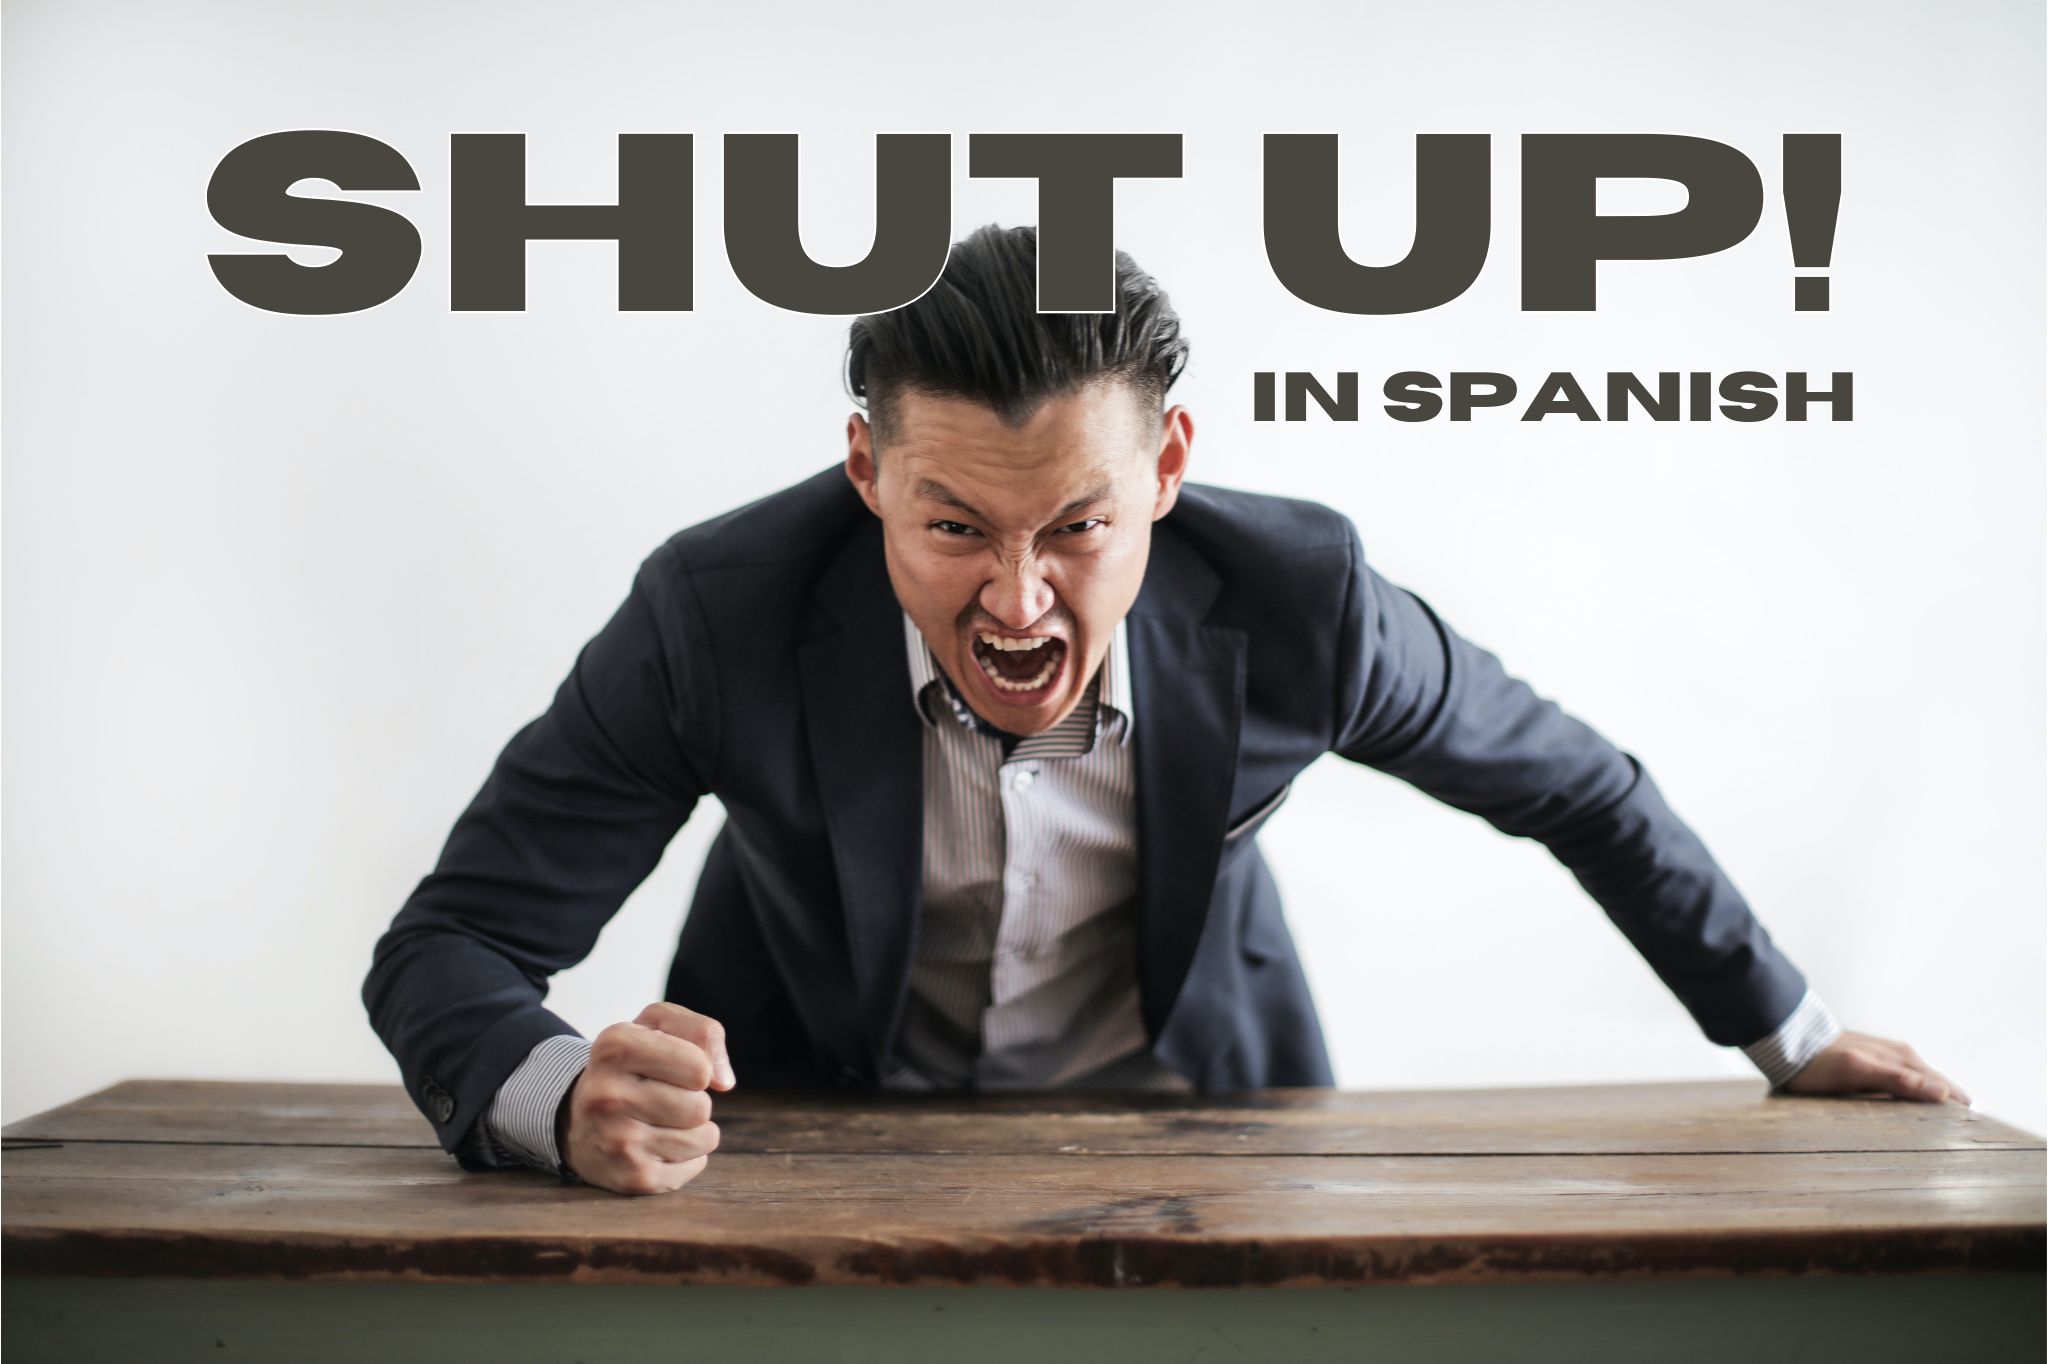 Shut up in Spanish